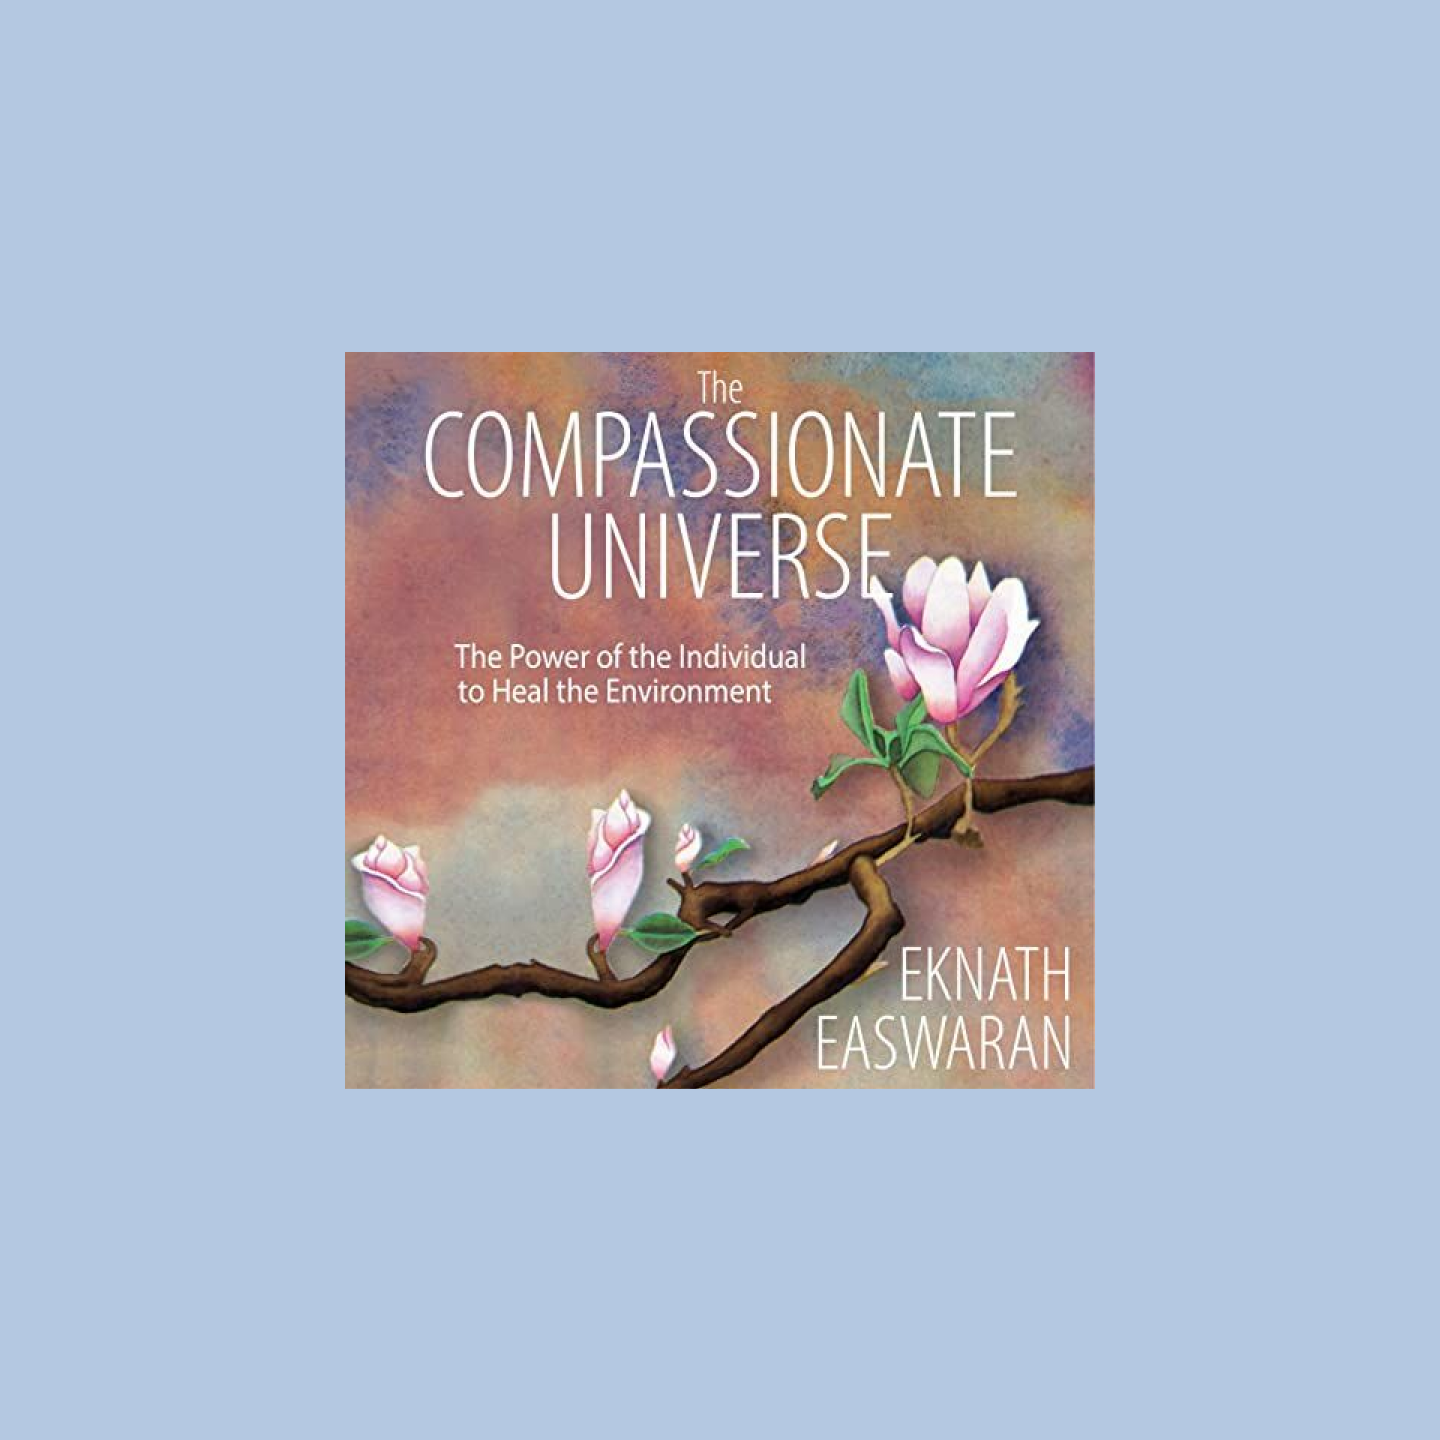 ปกหนังสือเสียงมีชื่อว่า The Compassionate Universe พร้อมกับรูปต้นซากุระ